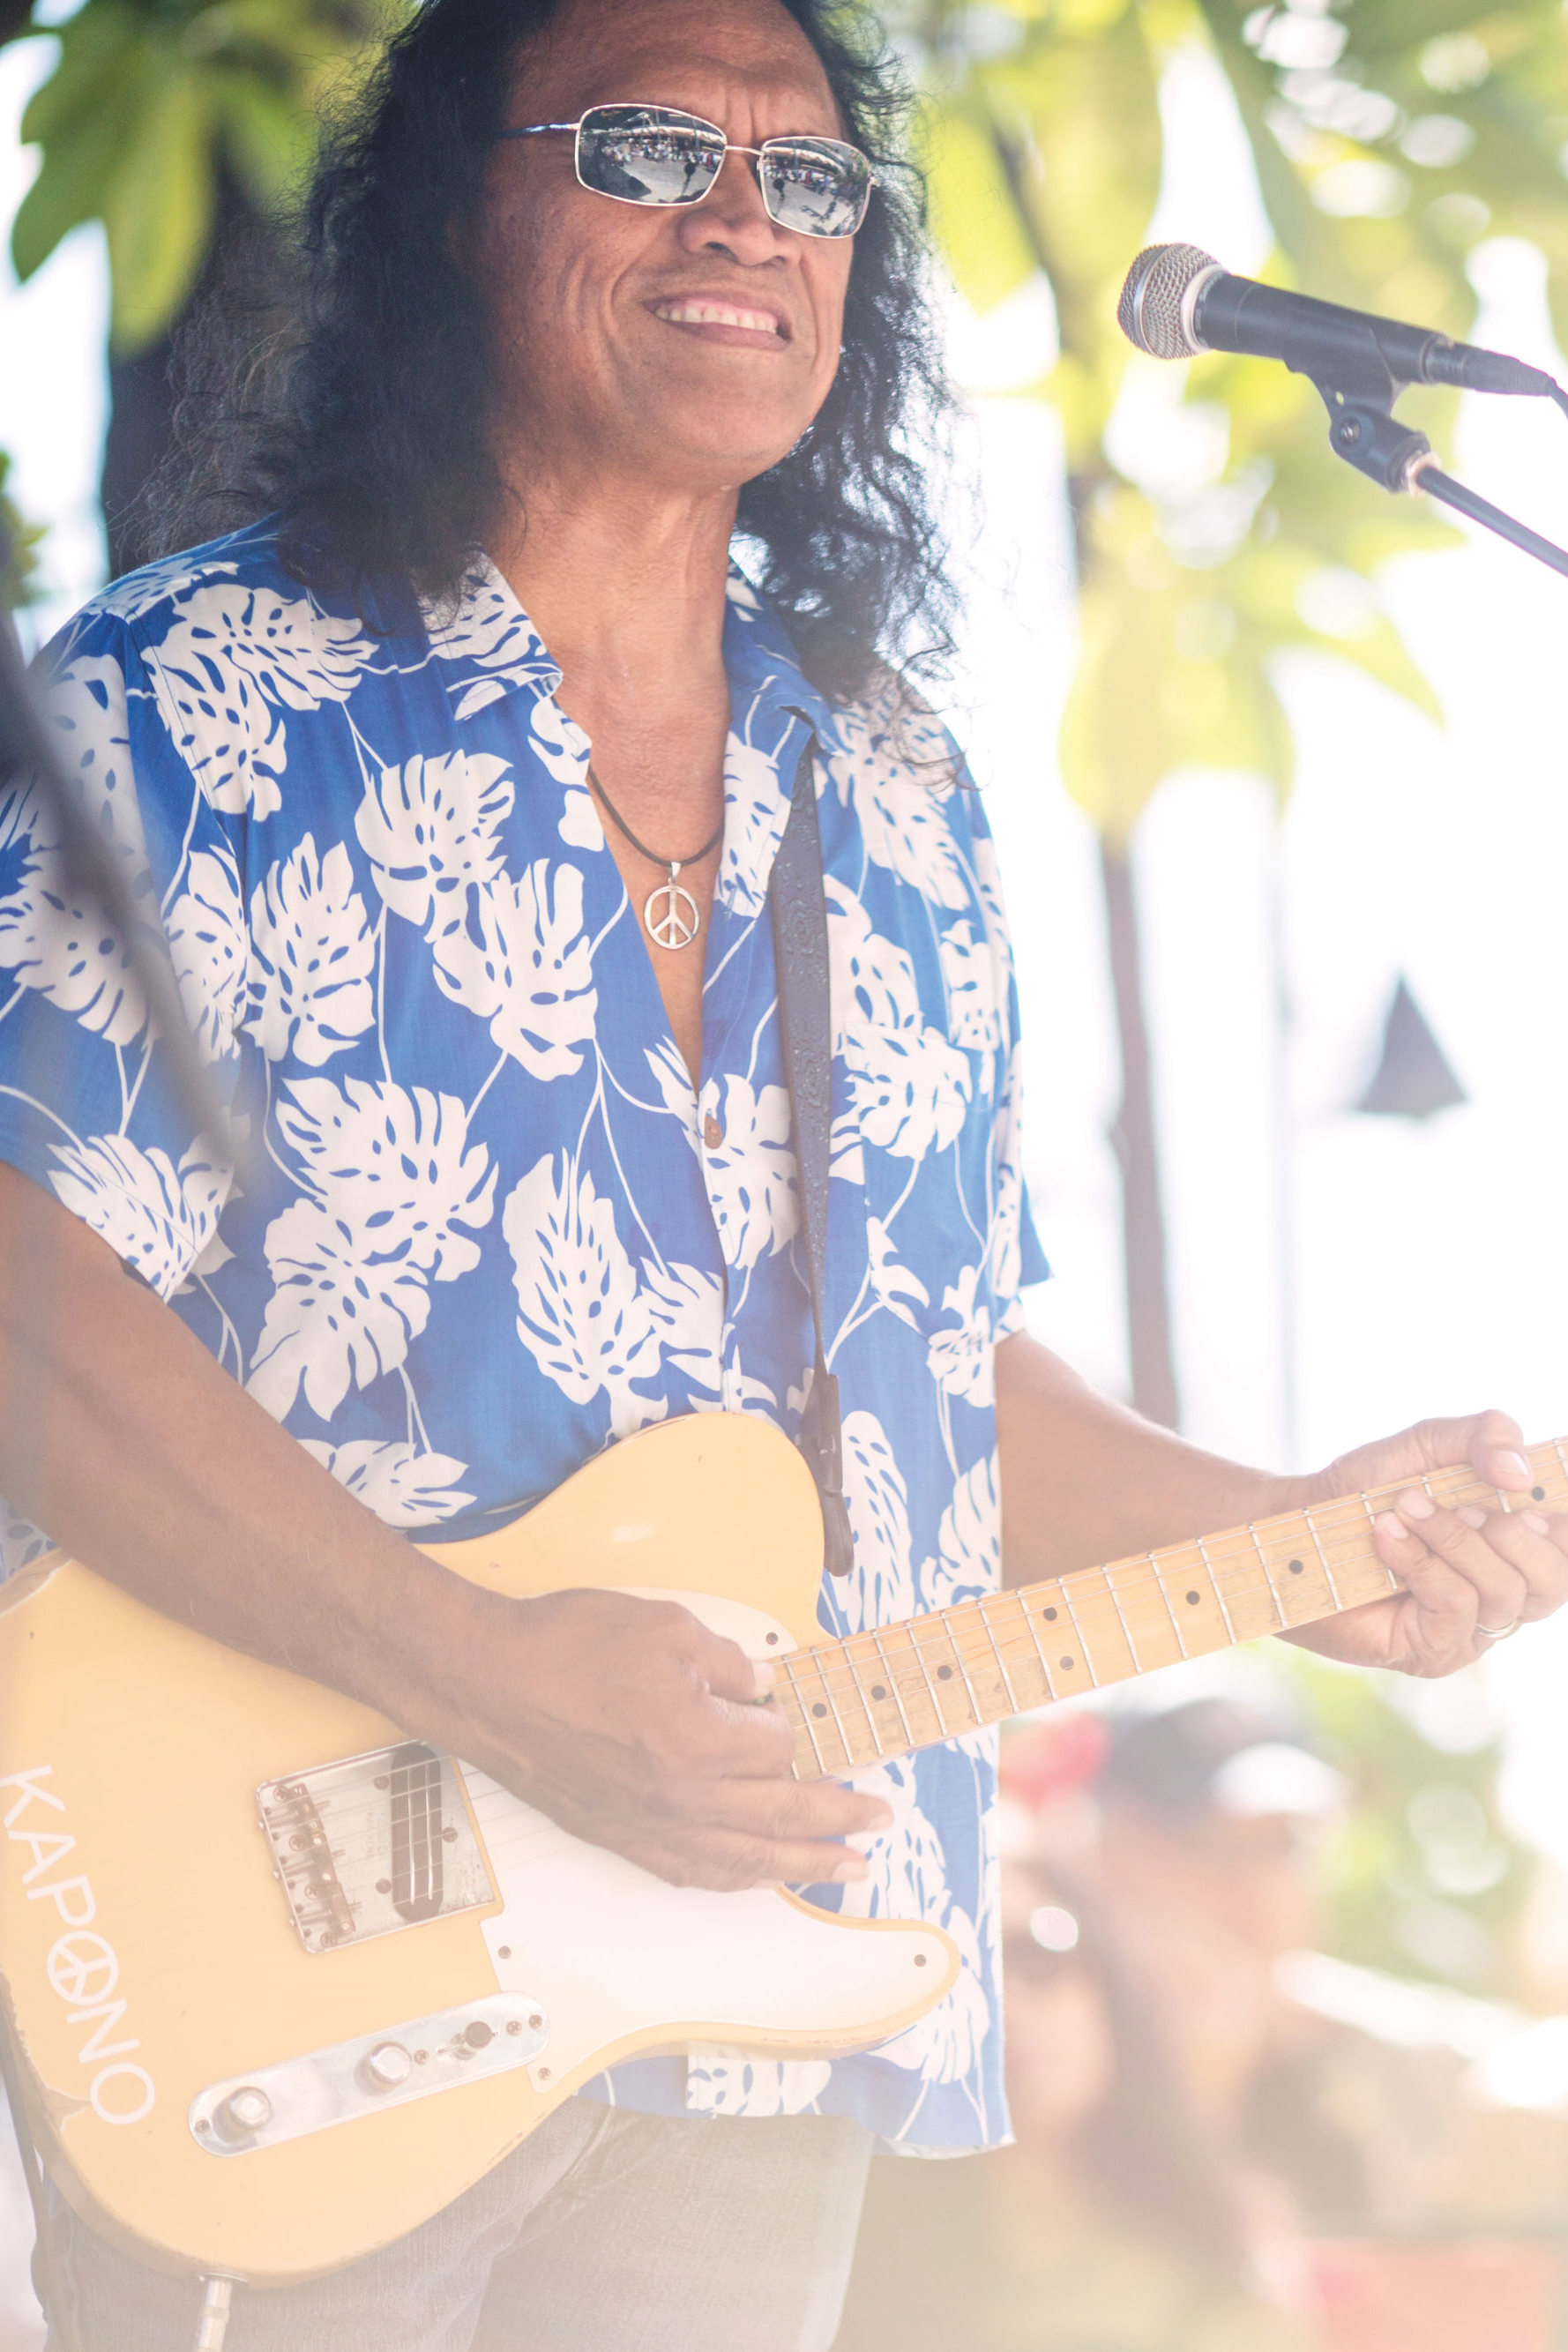 Henry Kapono playing at Duke's Waikiki